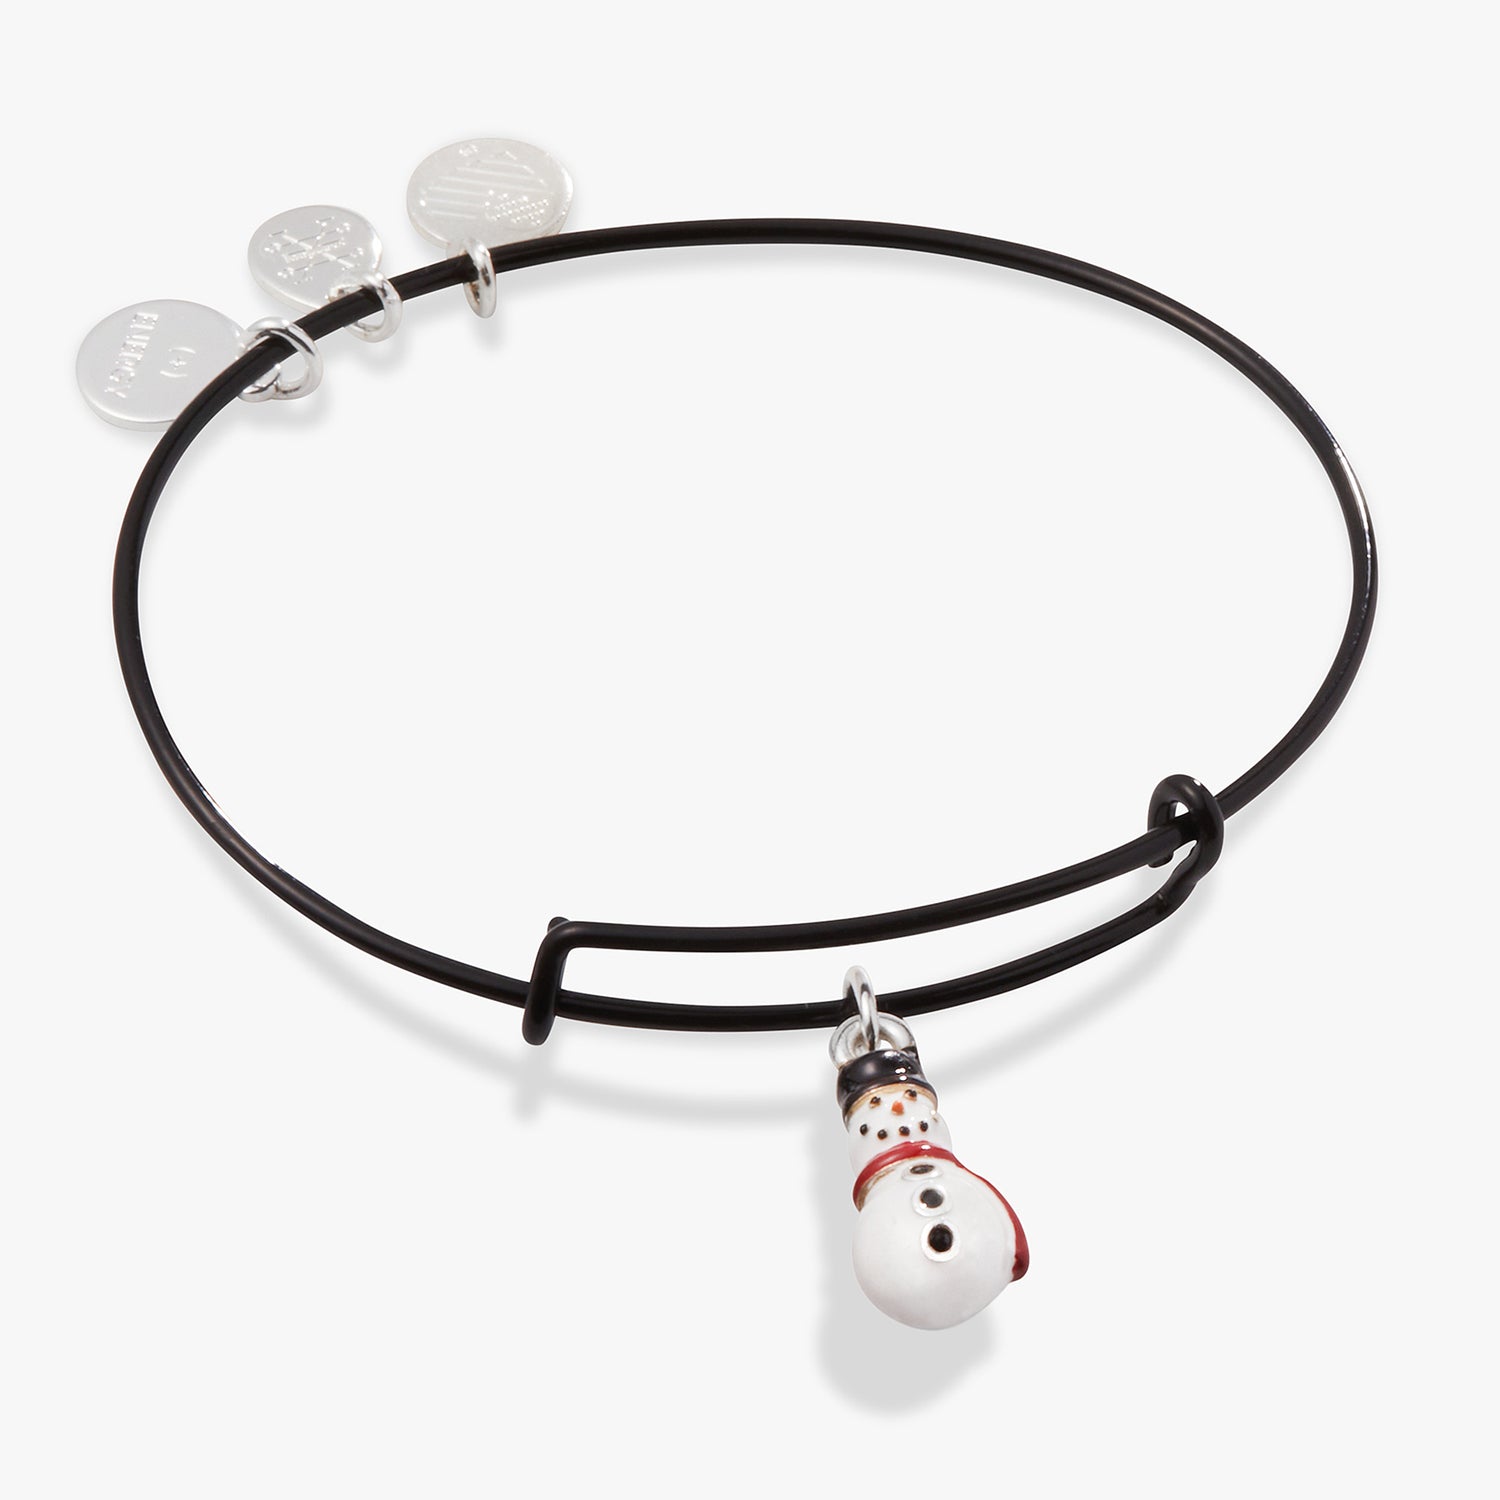 Snowman Charm Bangle Bracelet, Black